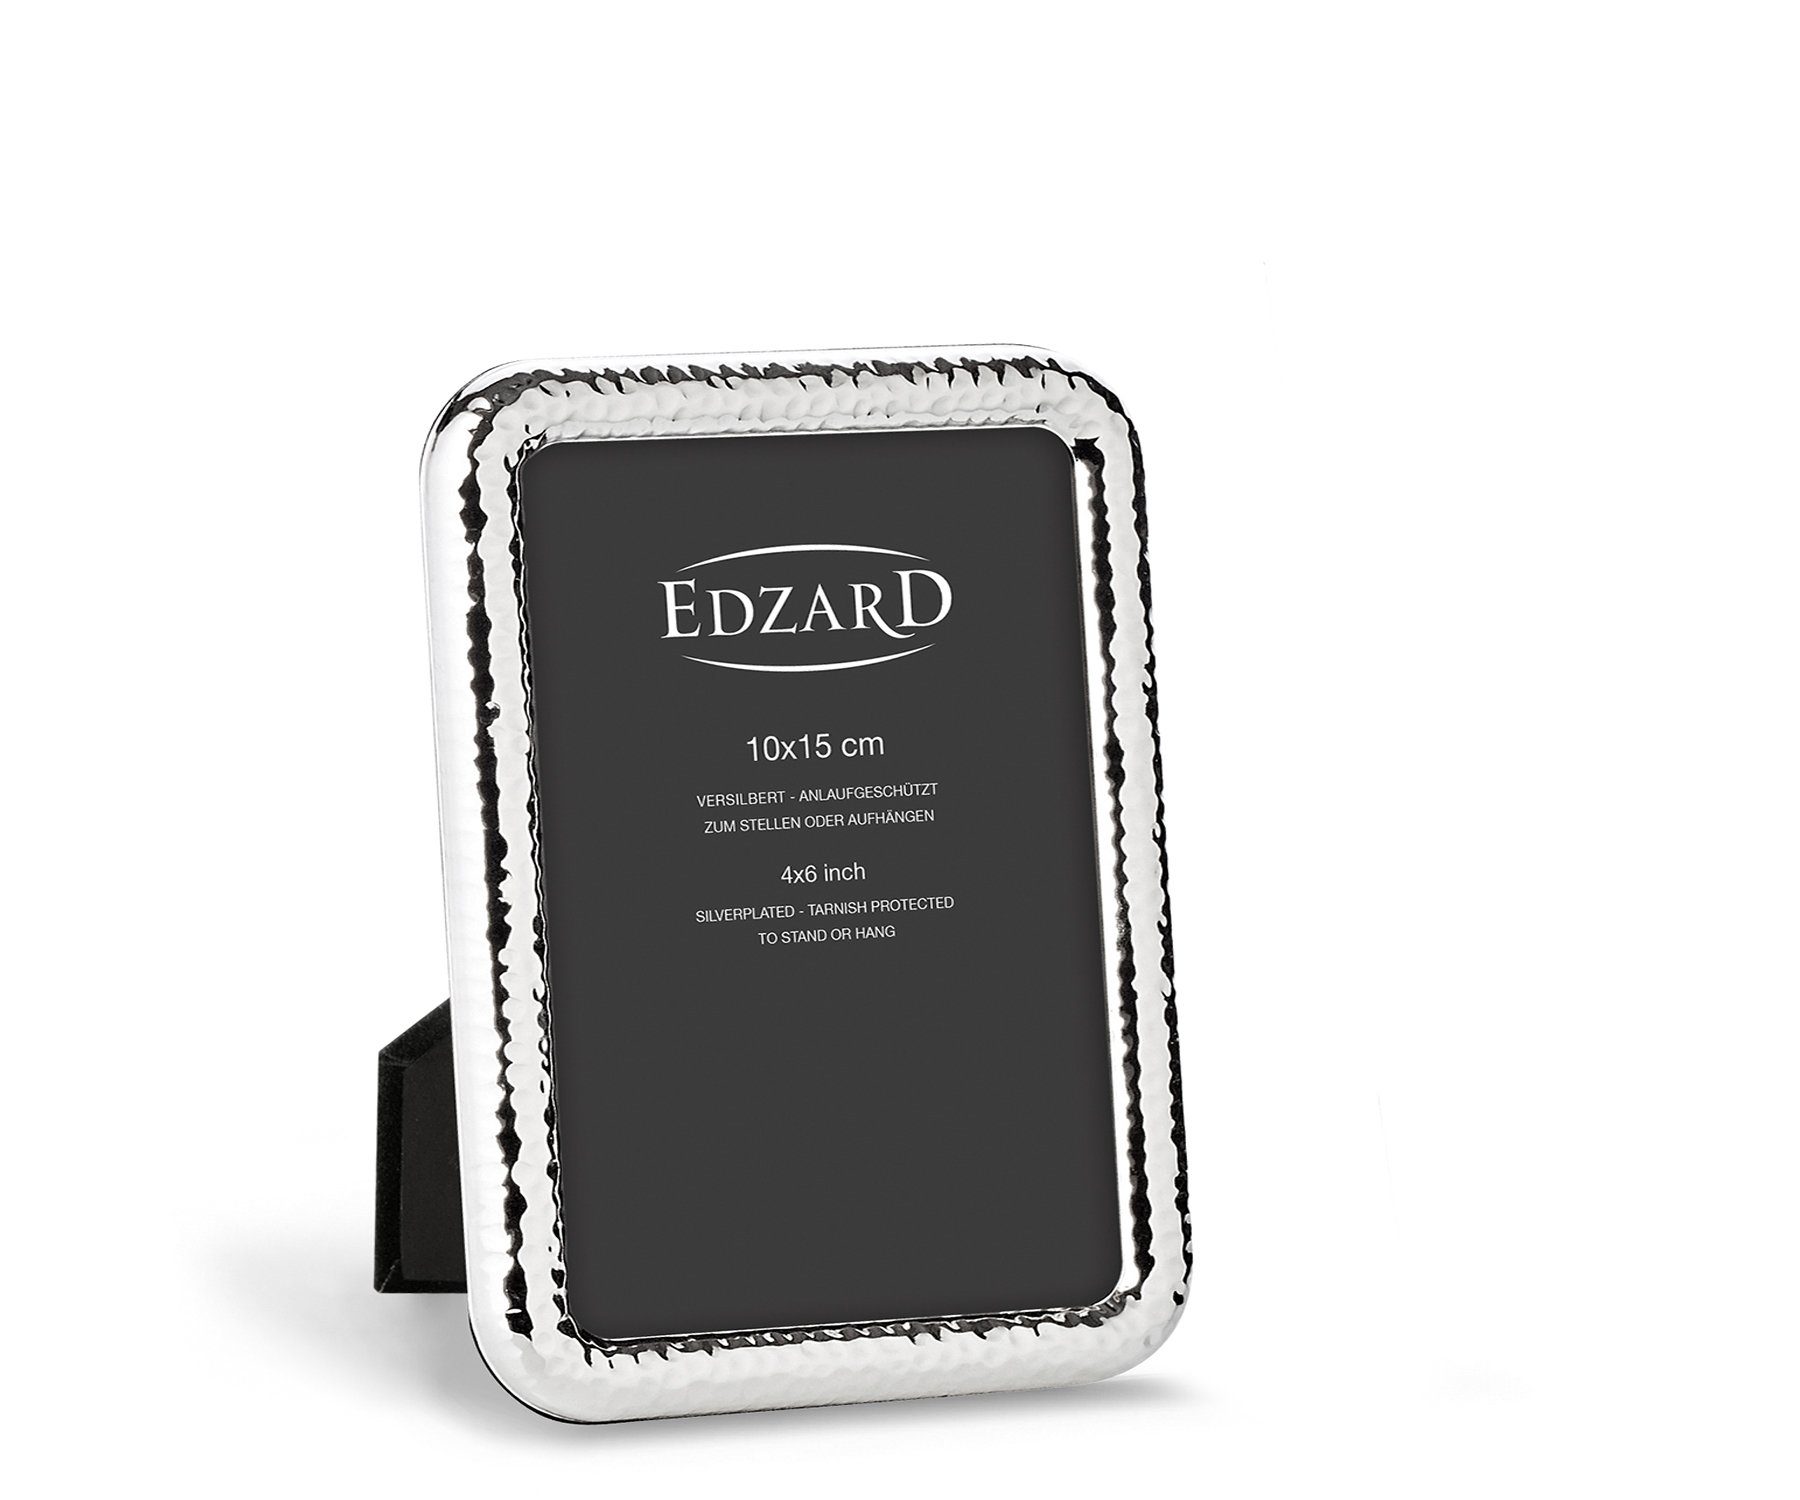 EDZARD Bilderrahmen Amalfi, versilbert und anlaufgeschützt, für 10x15 cm Bilder - Fotorahmen